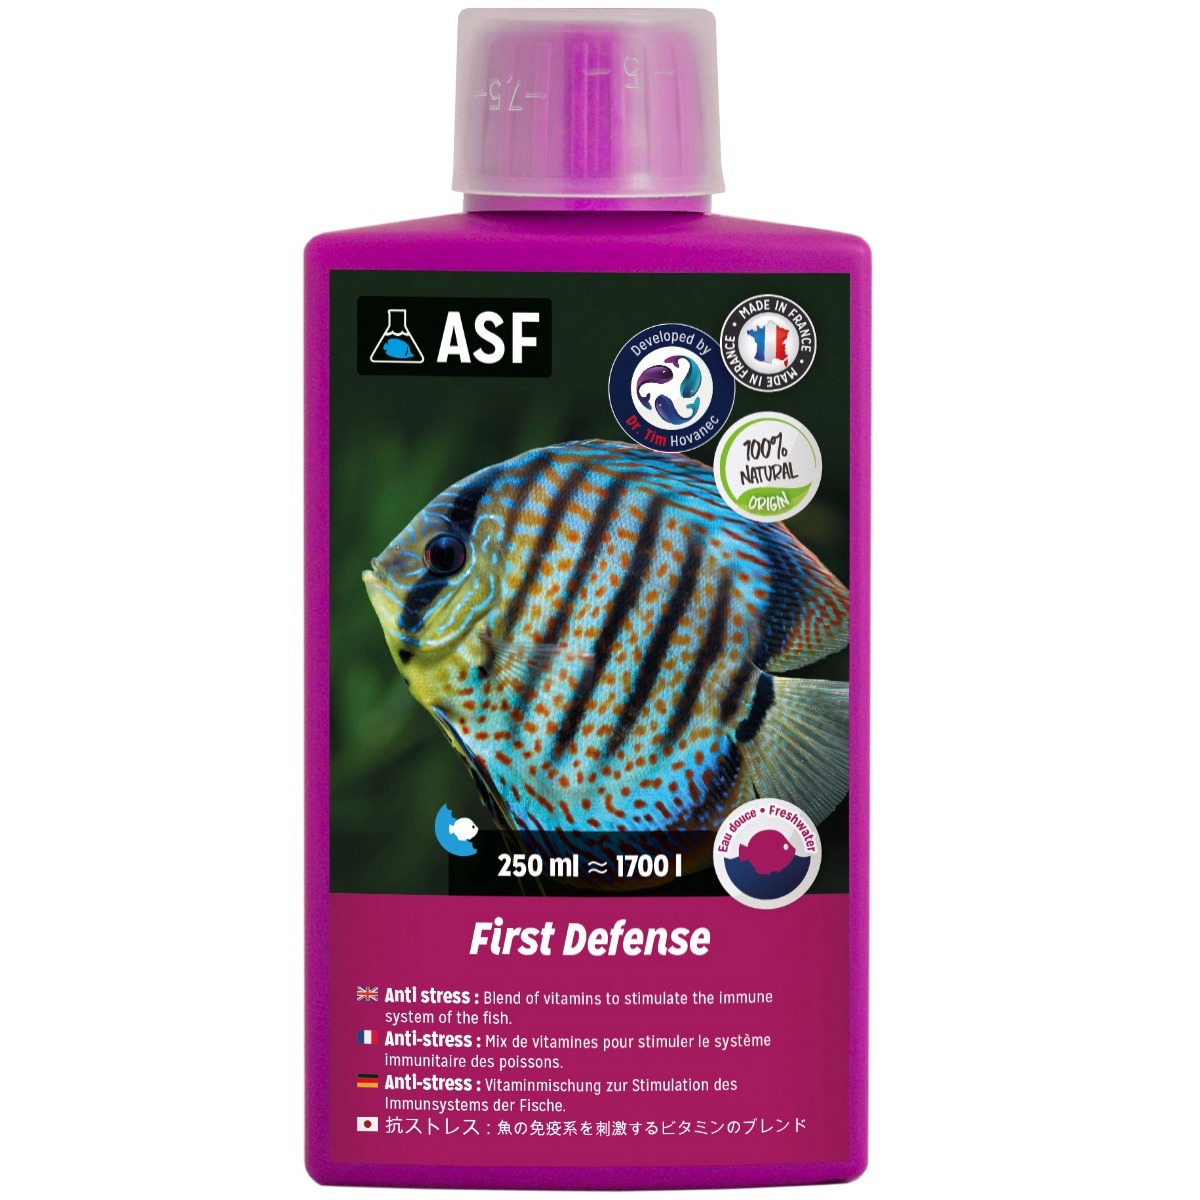 AQUARIUM SYSTEMS First Defense Eau Douce 250 ml anti-stress à base de vitamines stimulant le système immunitaire des poissons